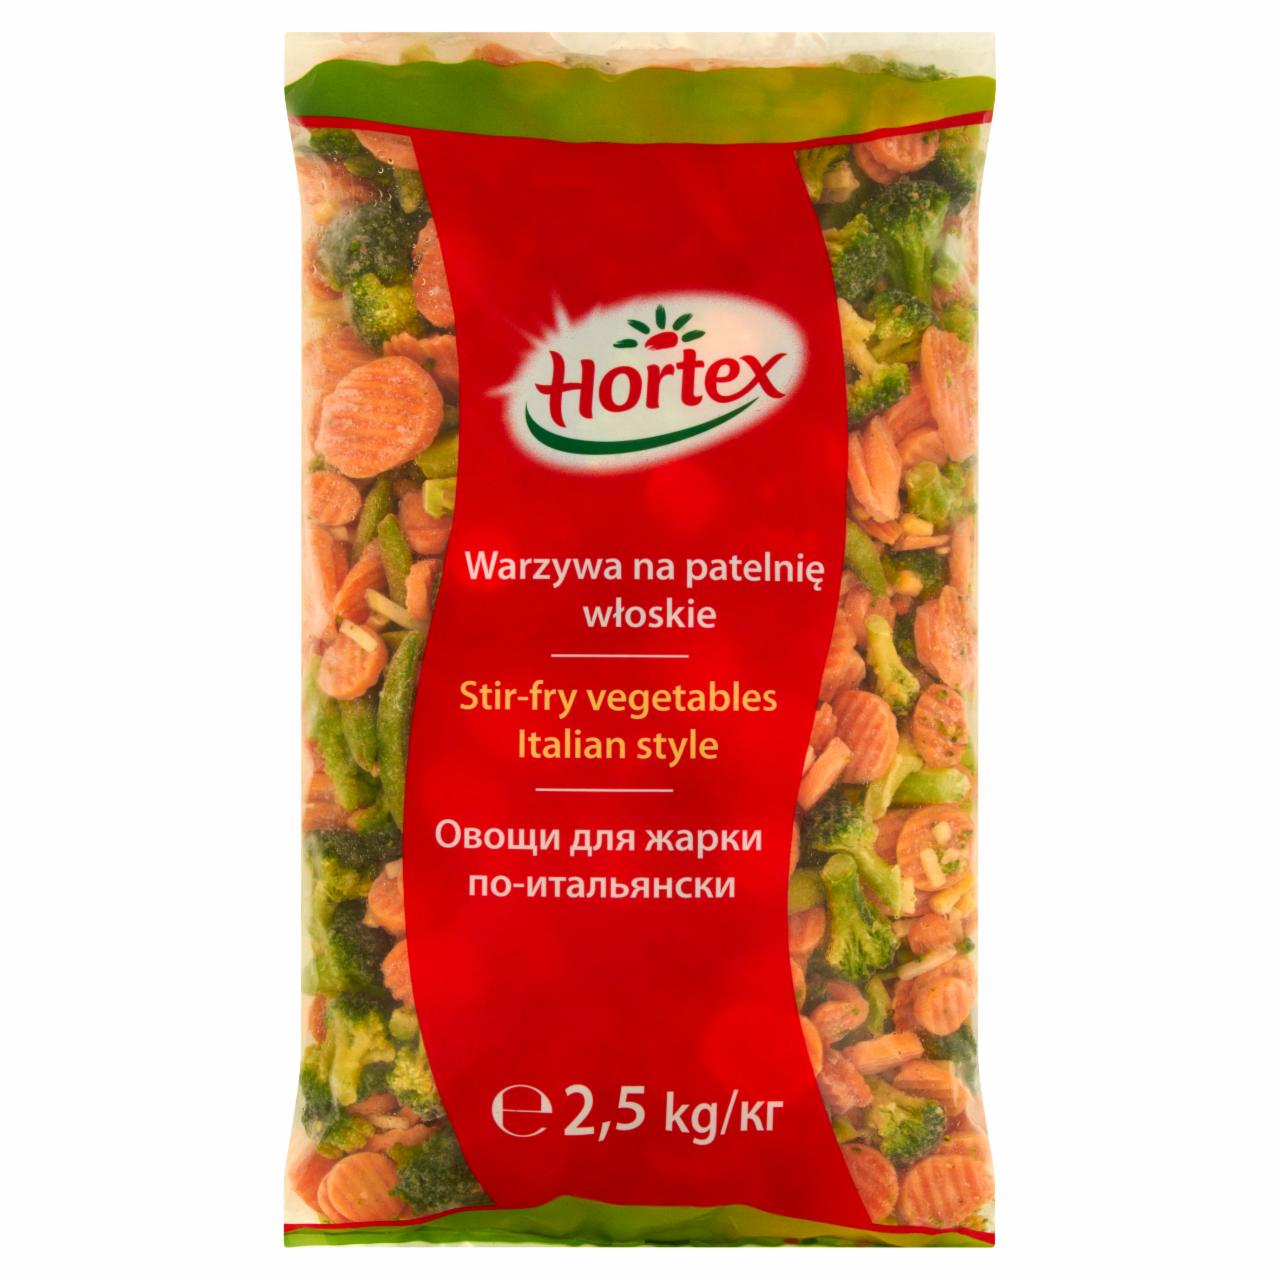 Zdjęcia - Hortex Warzywa na patelnię włoskie 2,5 kg